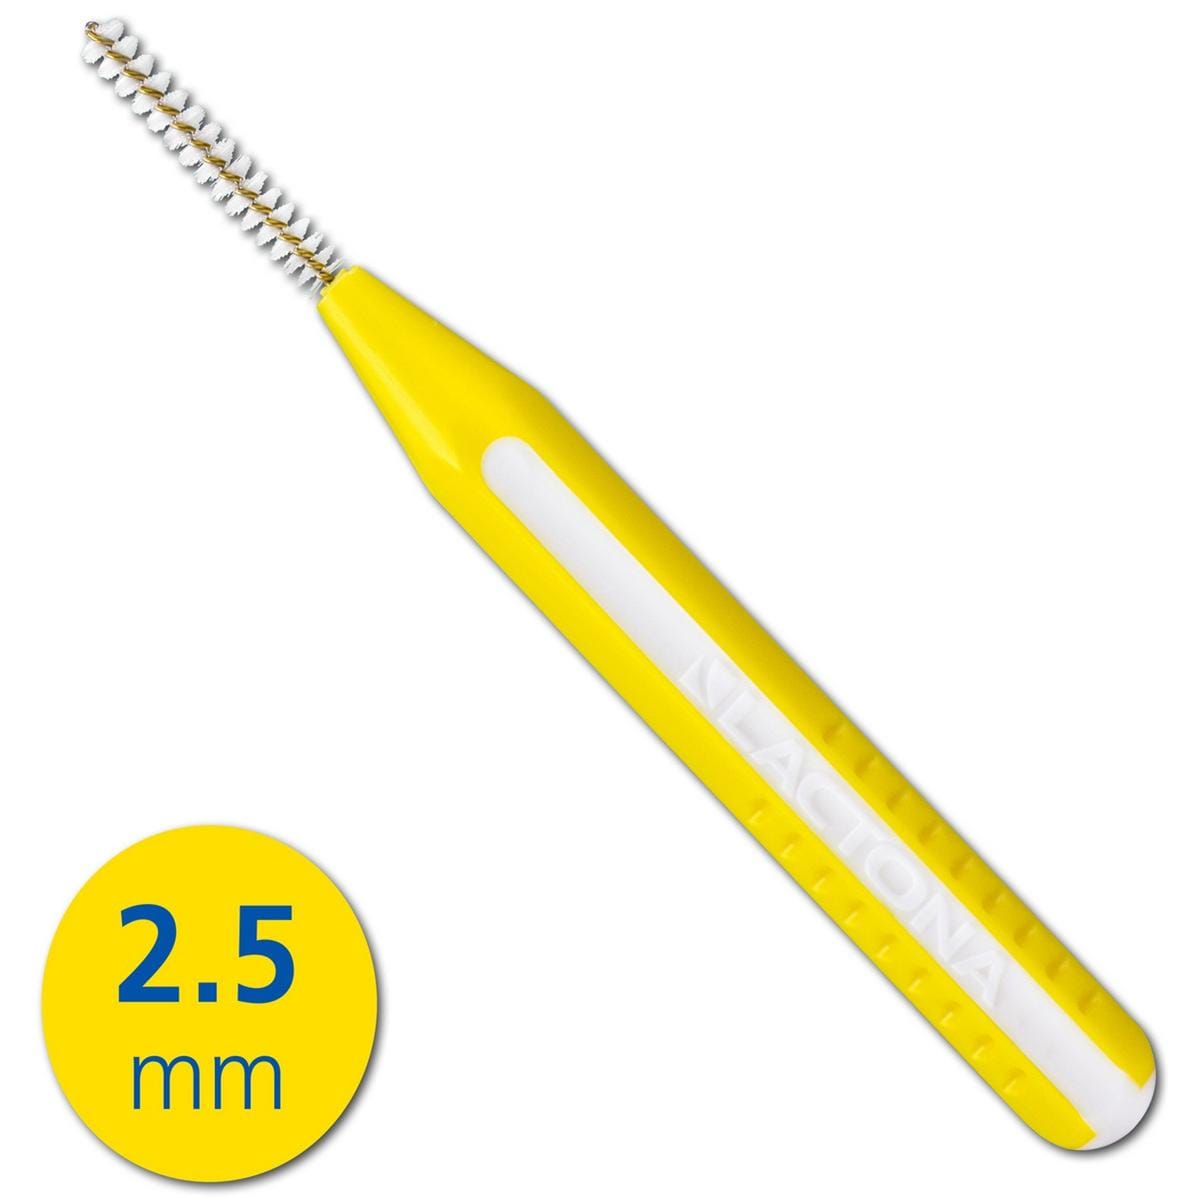 EasyGrip - navulling - 2,5 mm geel 100 stuks in gripzak